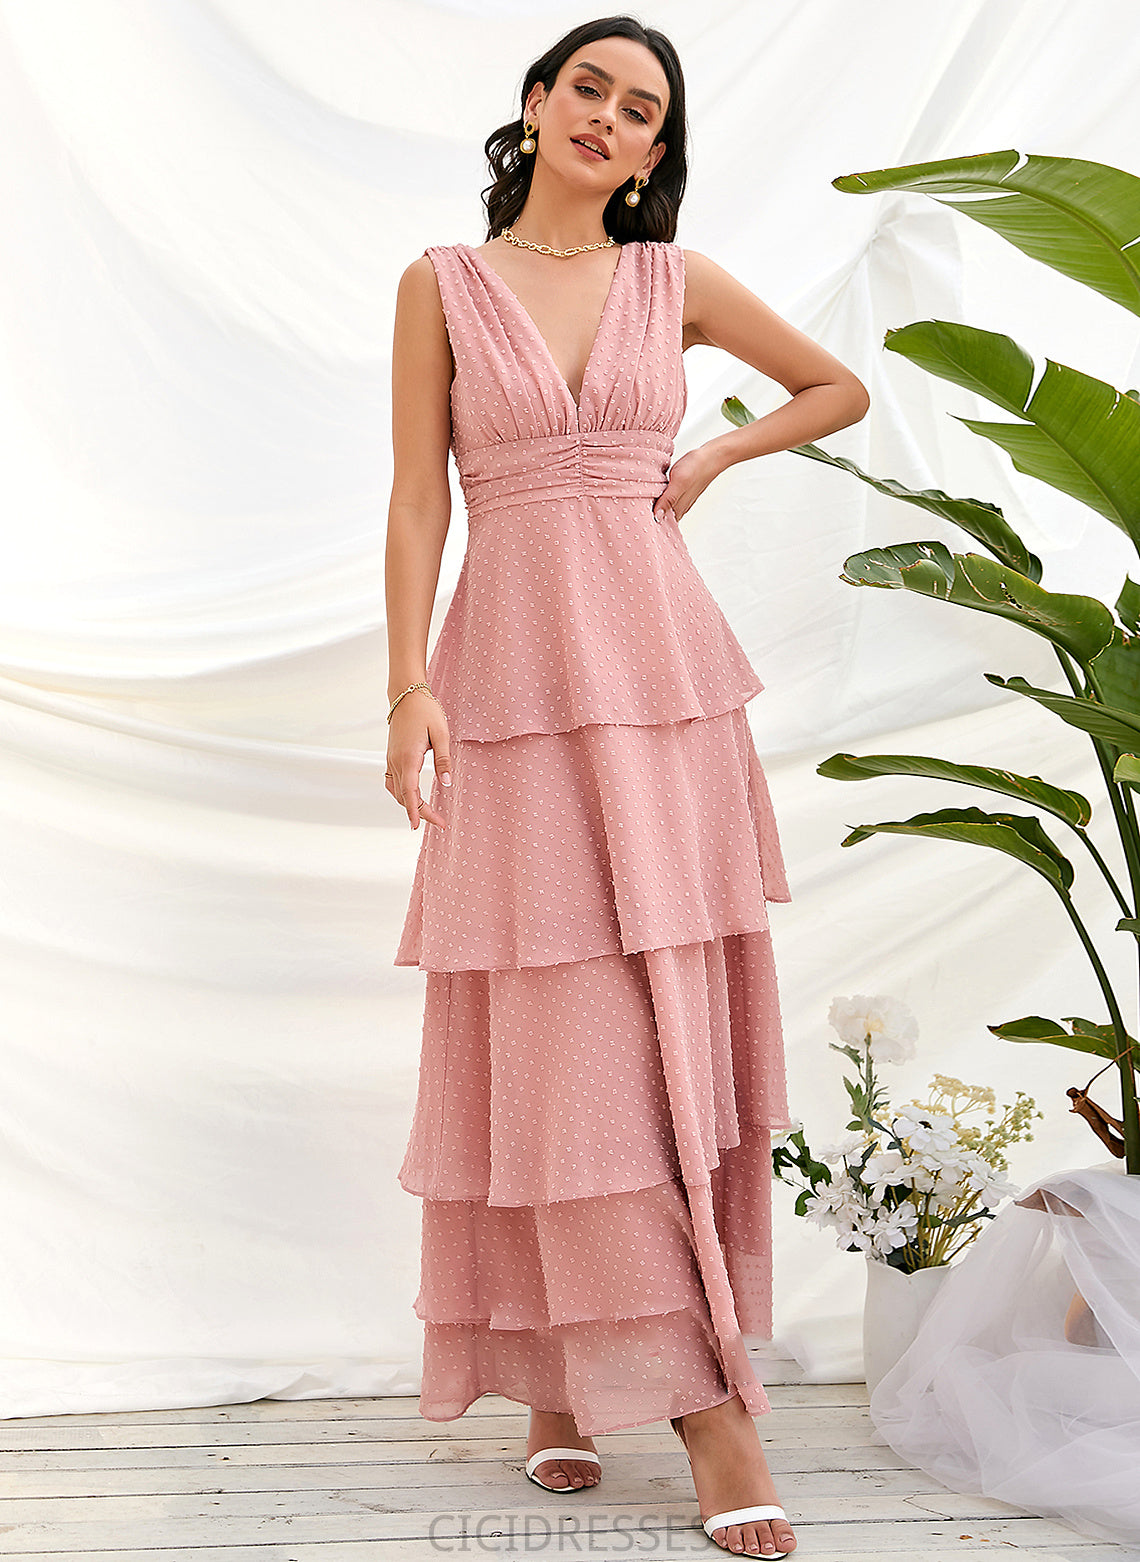 Silhouette A-Line Fabric Neckline Length Straps Ankle-Length V-neck Briana Sleeveless Floor Length Natural Waist Bridesmaid Dresses